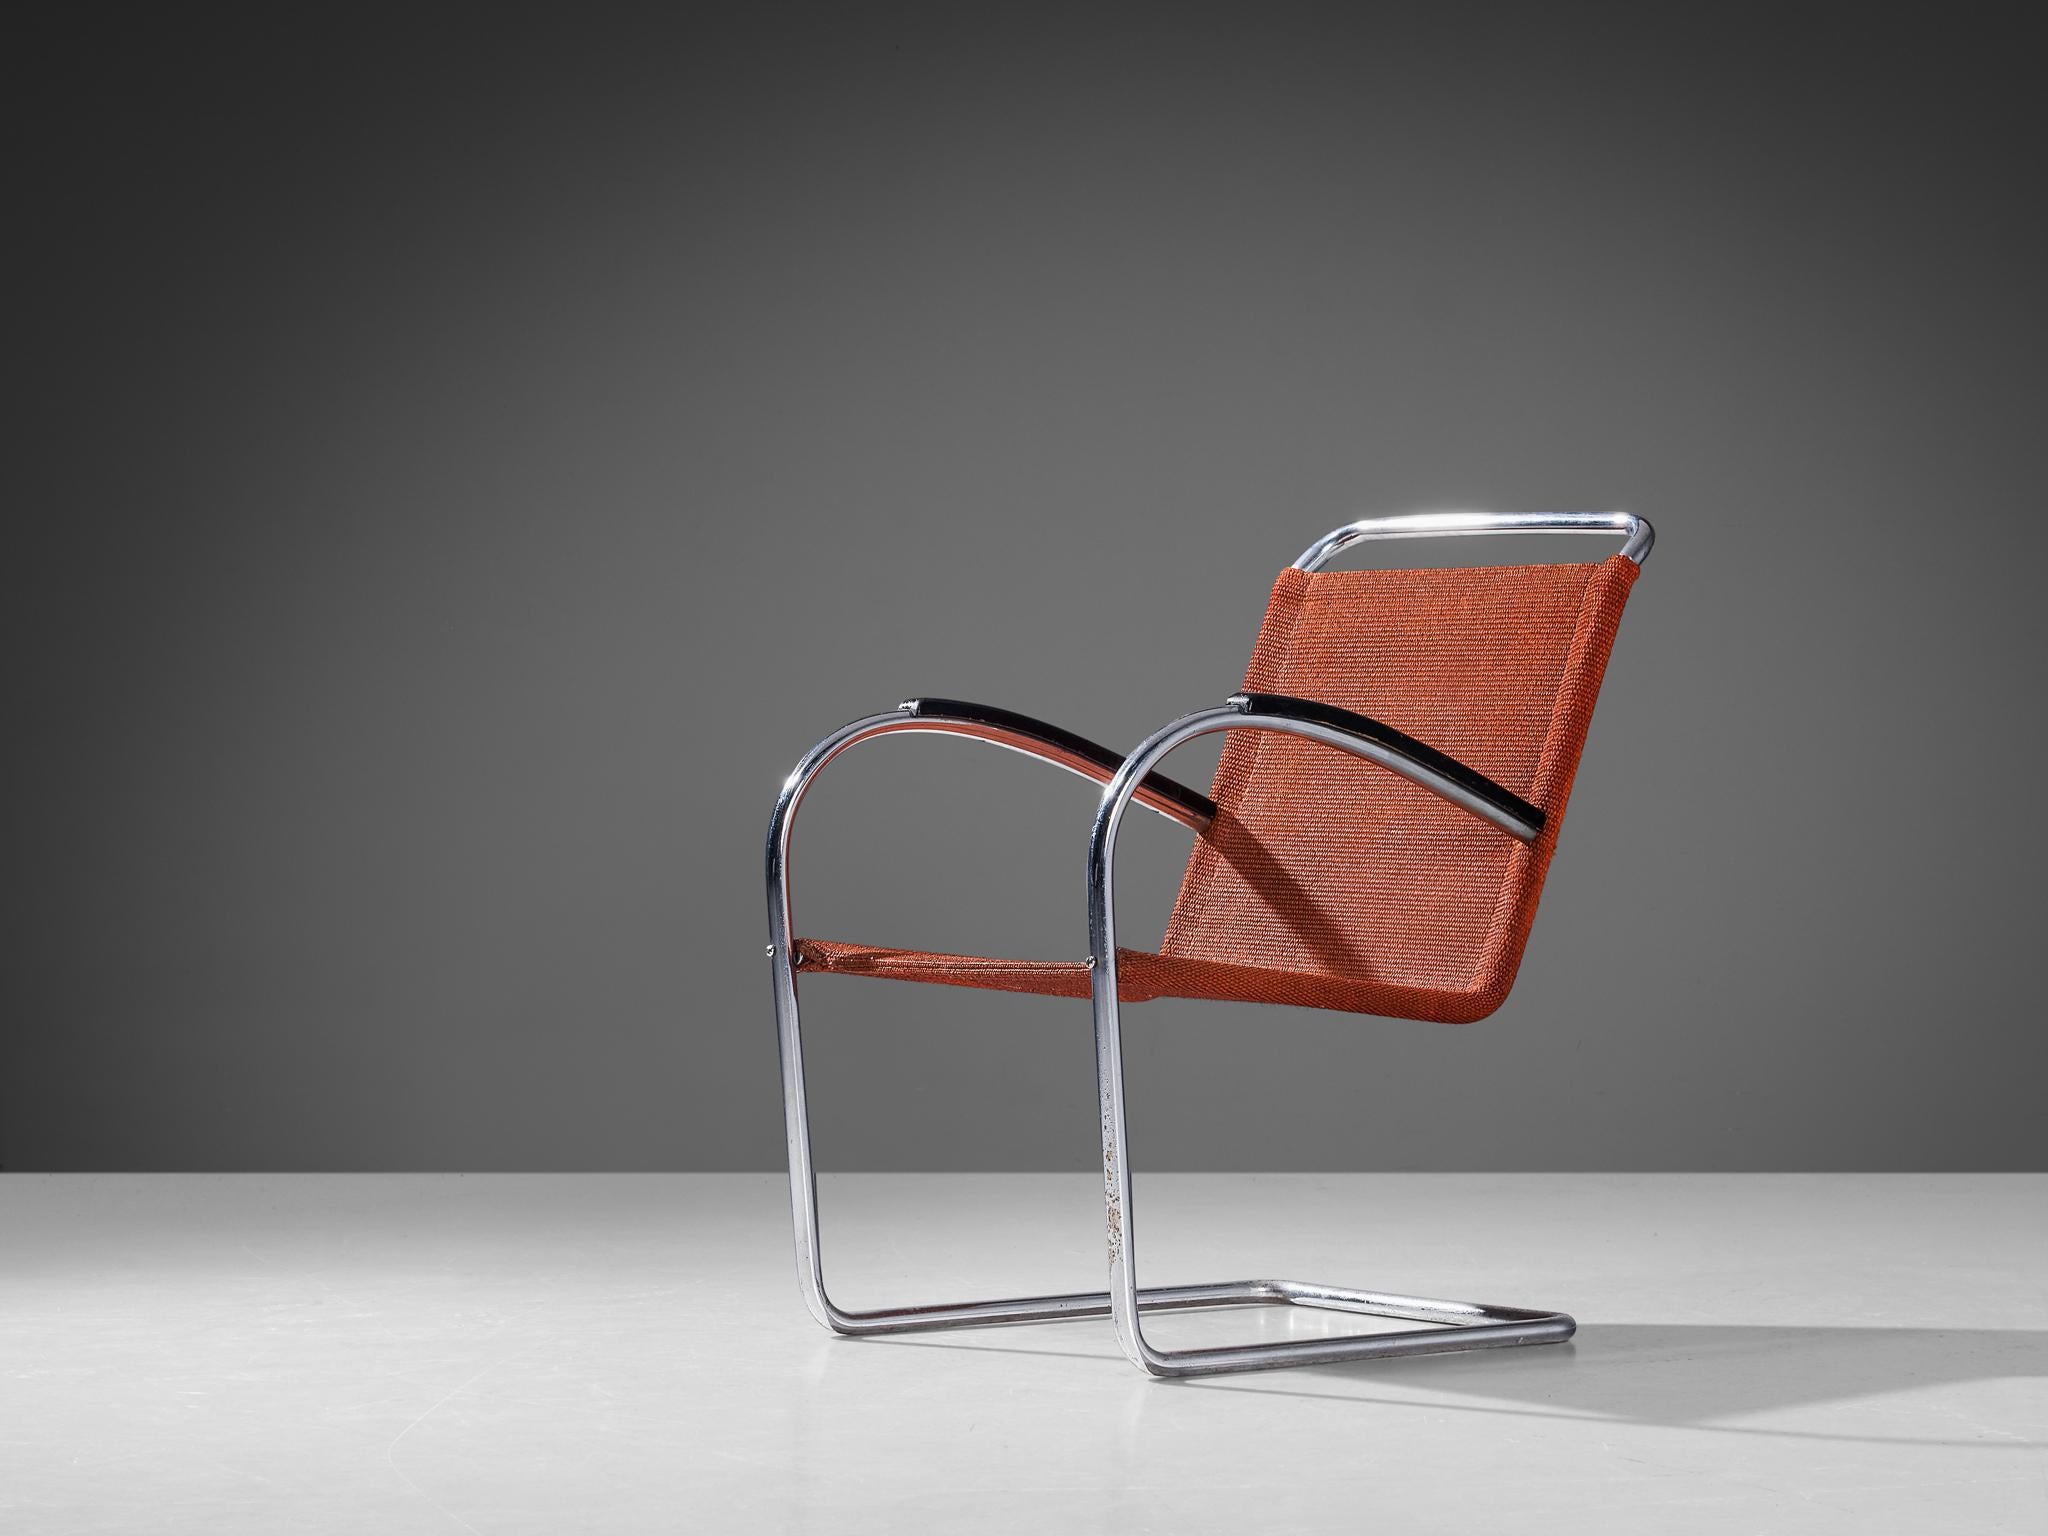 Bas van Pelt pour EMS, fauteuil, métal, sisal, bois, Pays-Bas, années 1930.

Cette chaise confortable et originale a été conçue par le designer d'intérieur et de mobilier néerlandais Bas van Pelt (1900-1945) et a été fabriquée par E.M.S. Overschie.